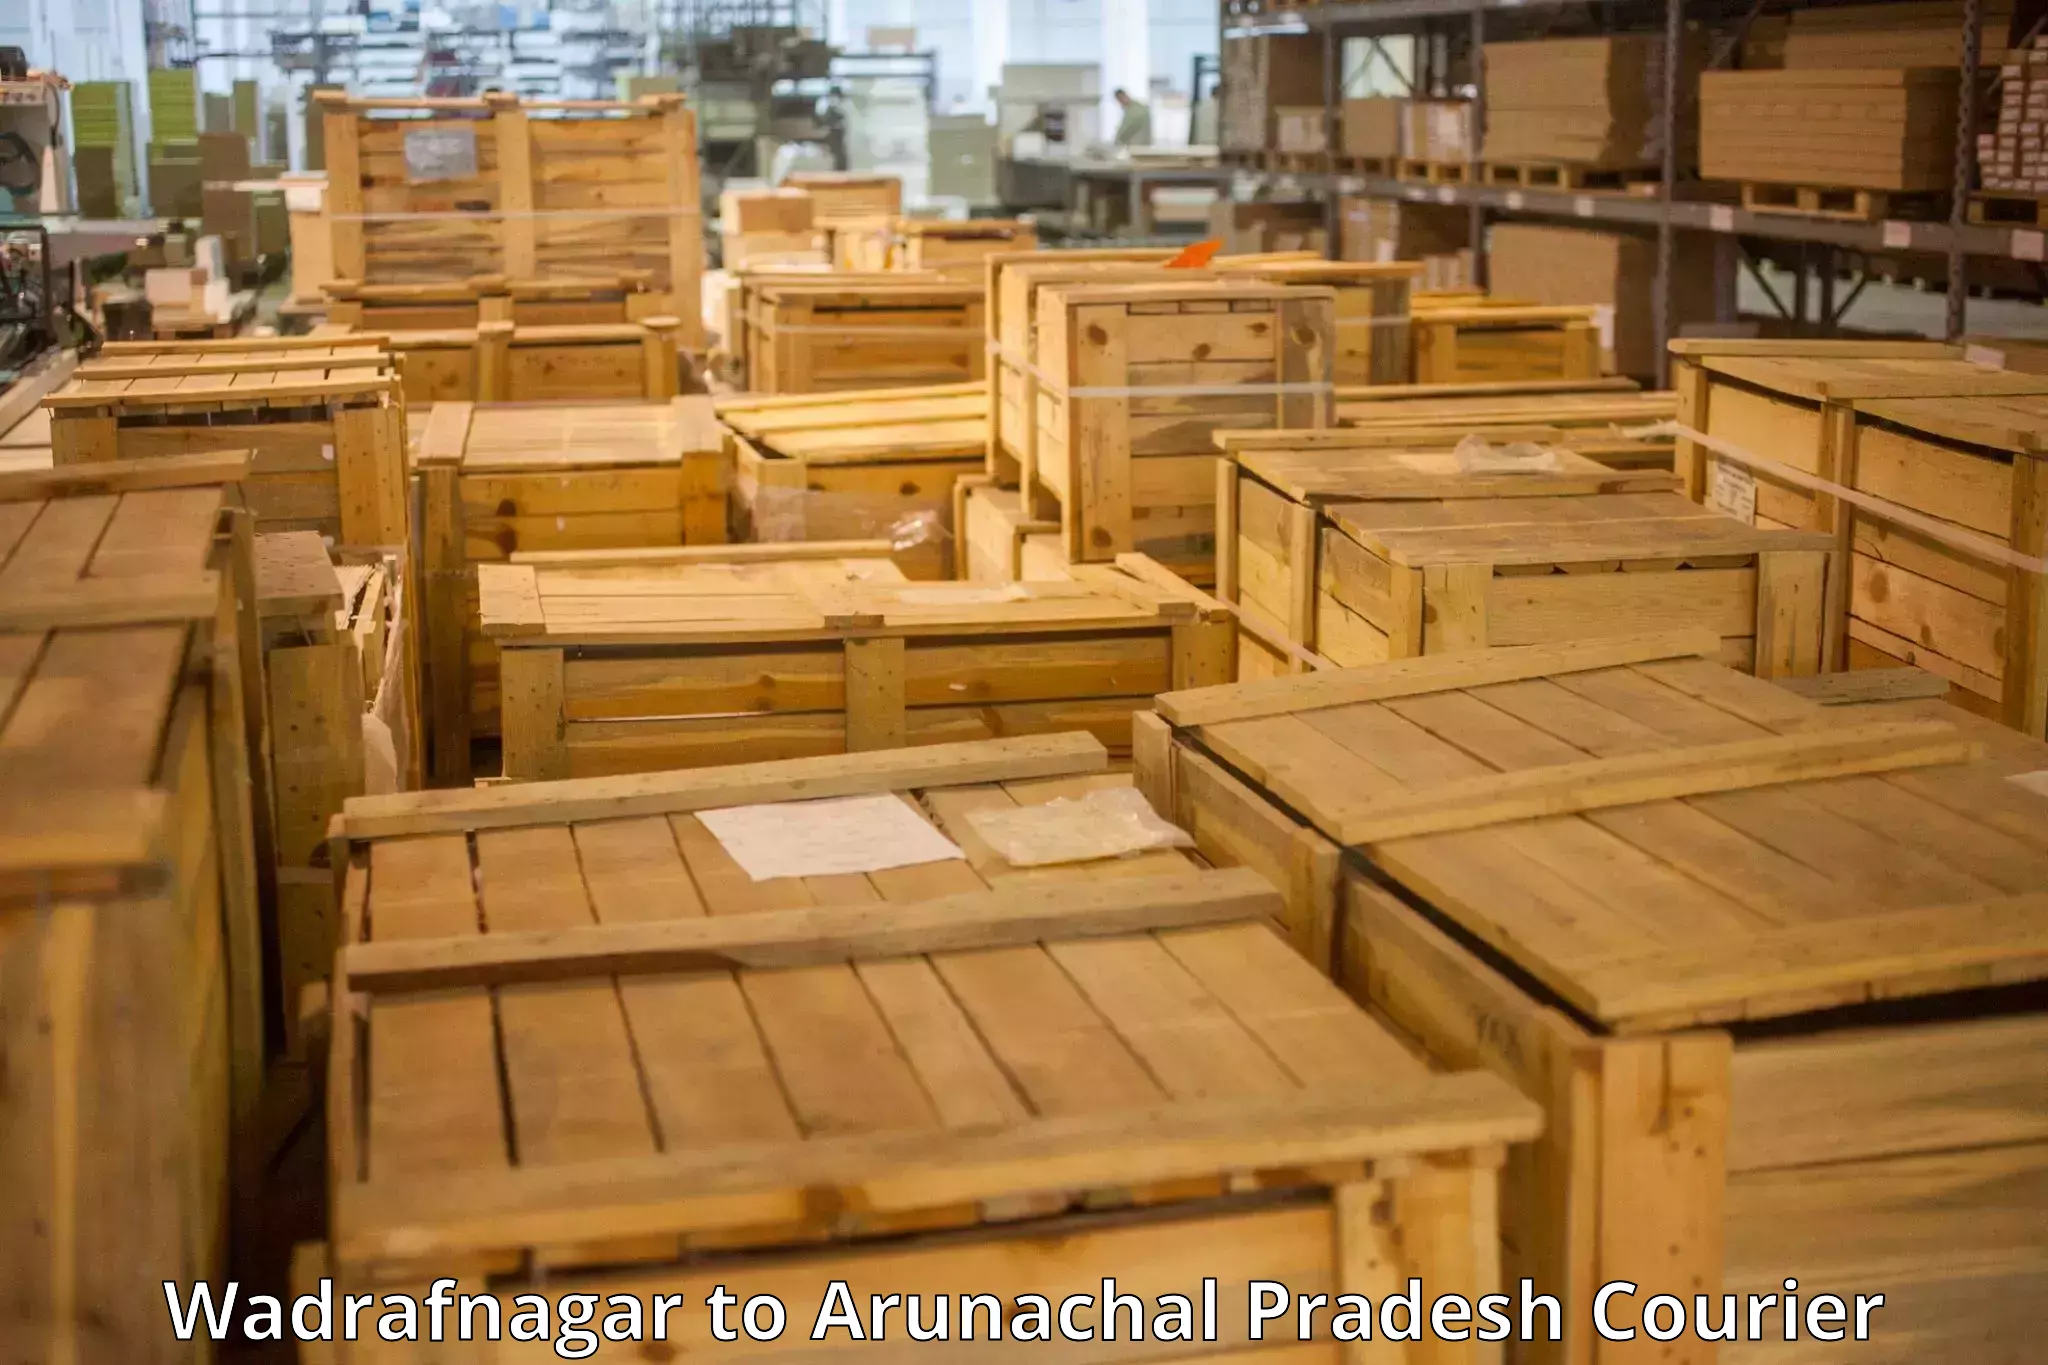 Luggage delivery system Wadrafnagar to Likabali